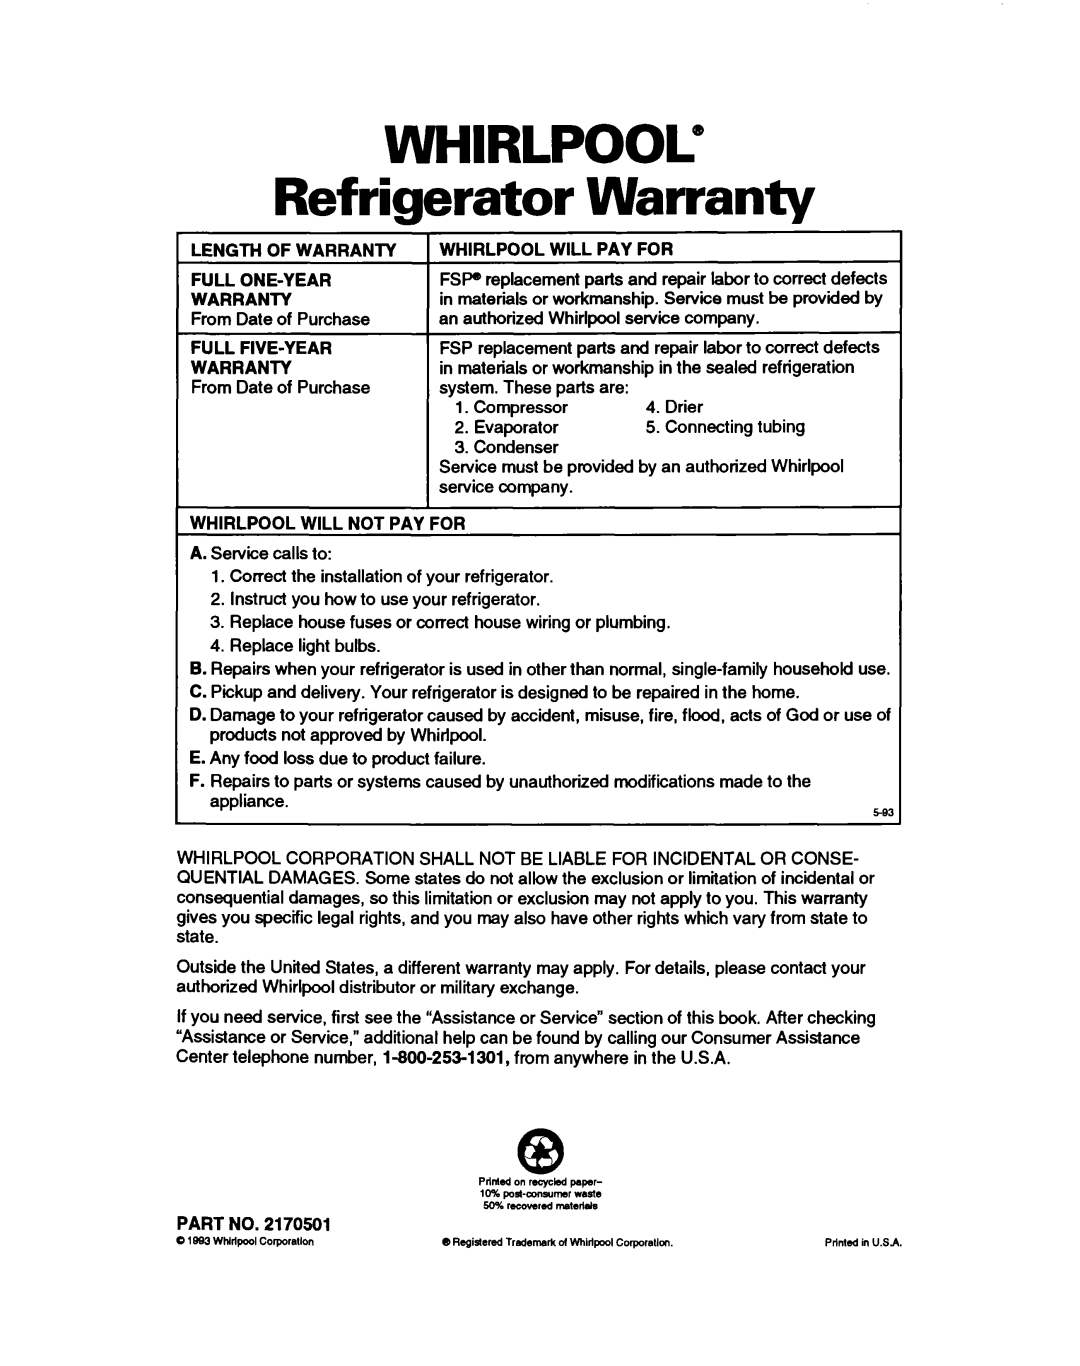 Whirlpool ET25DQ warranty WHIRLPOOL” Refrigerator Warranty 